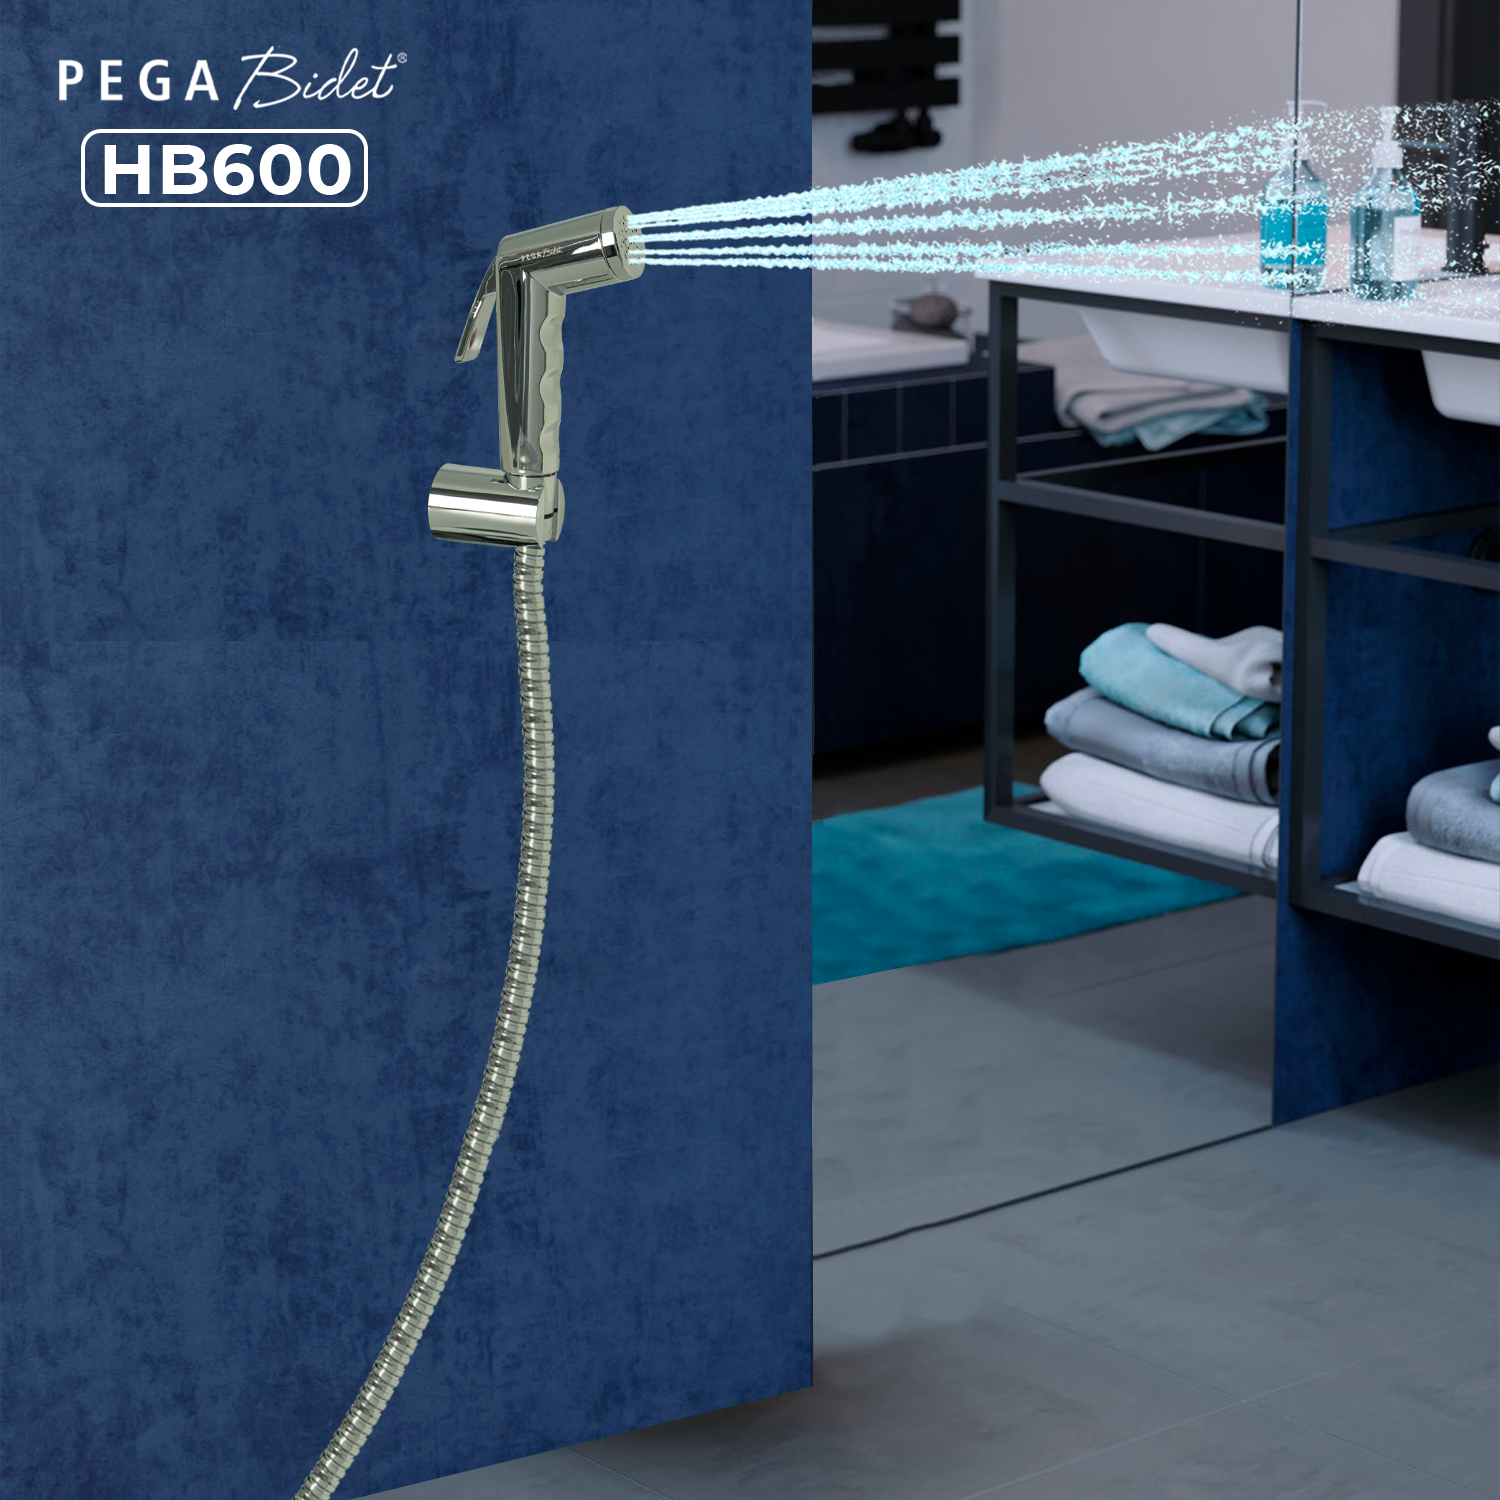 Bộ vòi xịt vệ sinh cầm tay PEGA Bidet HB600, dây cấp nước 1.2m inox 304, đầu vòi bằng nhựa mạ crôm, giá treo mạ crôm, bảo hành 12 tháng